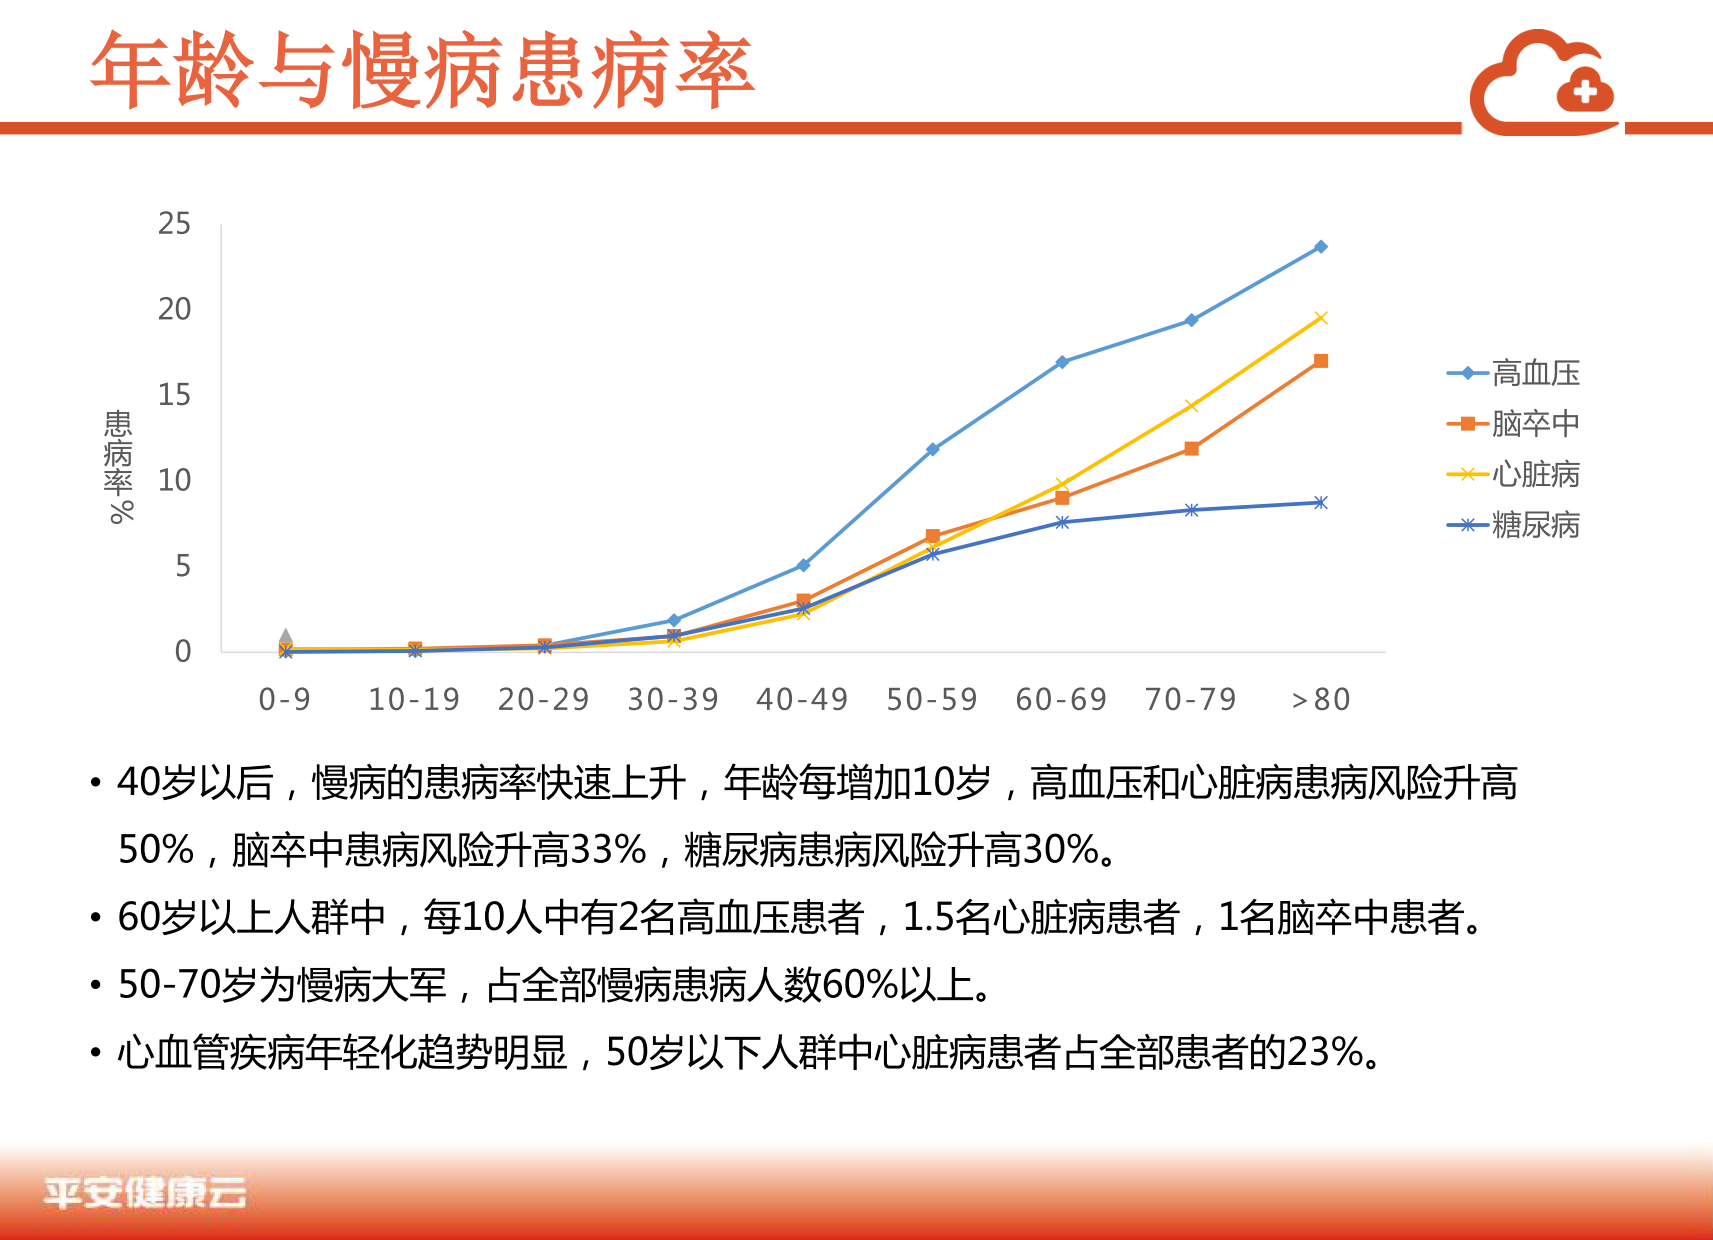 中国商业保险健康大数据白皮书_2_08.png